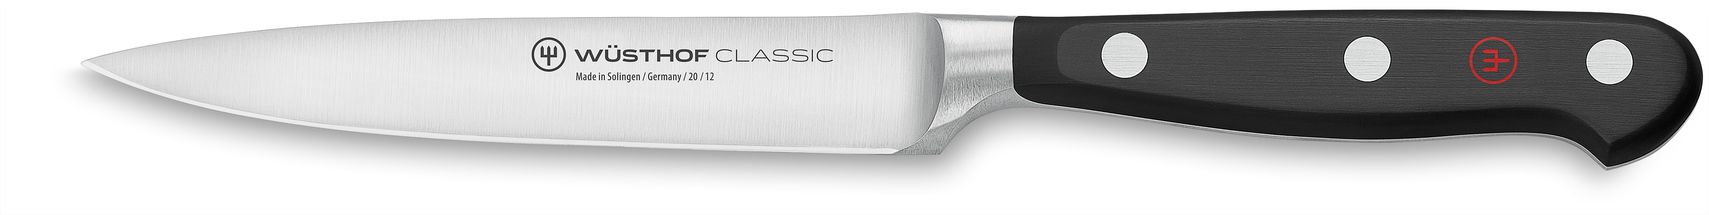 Cuchillo para Pelar Wusthof Classic 12 cm